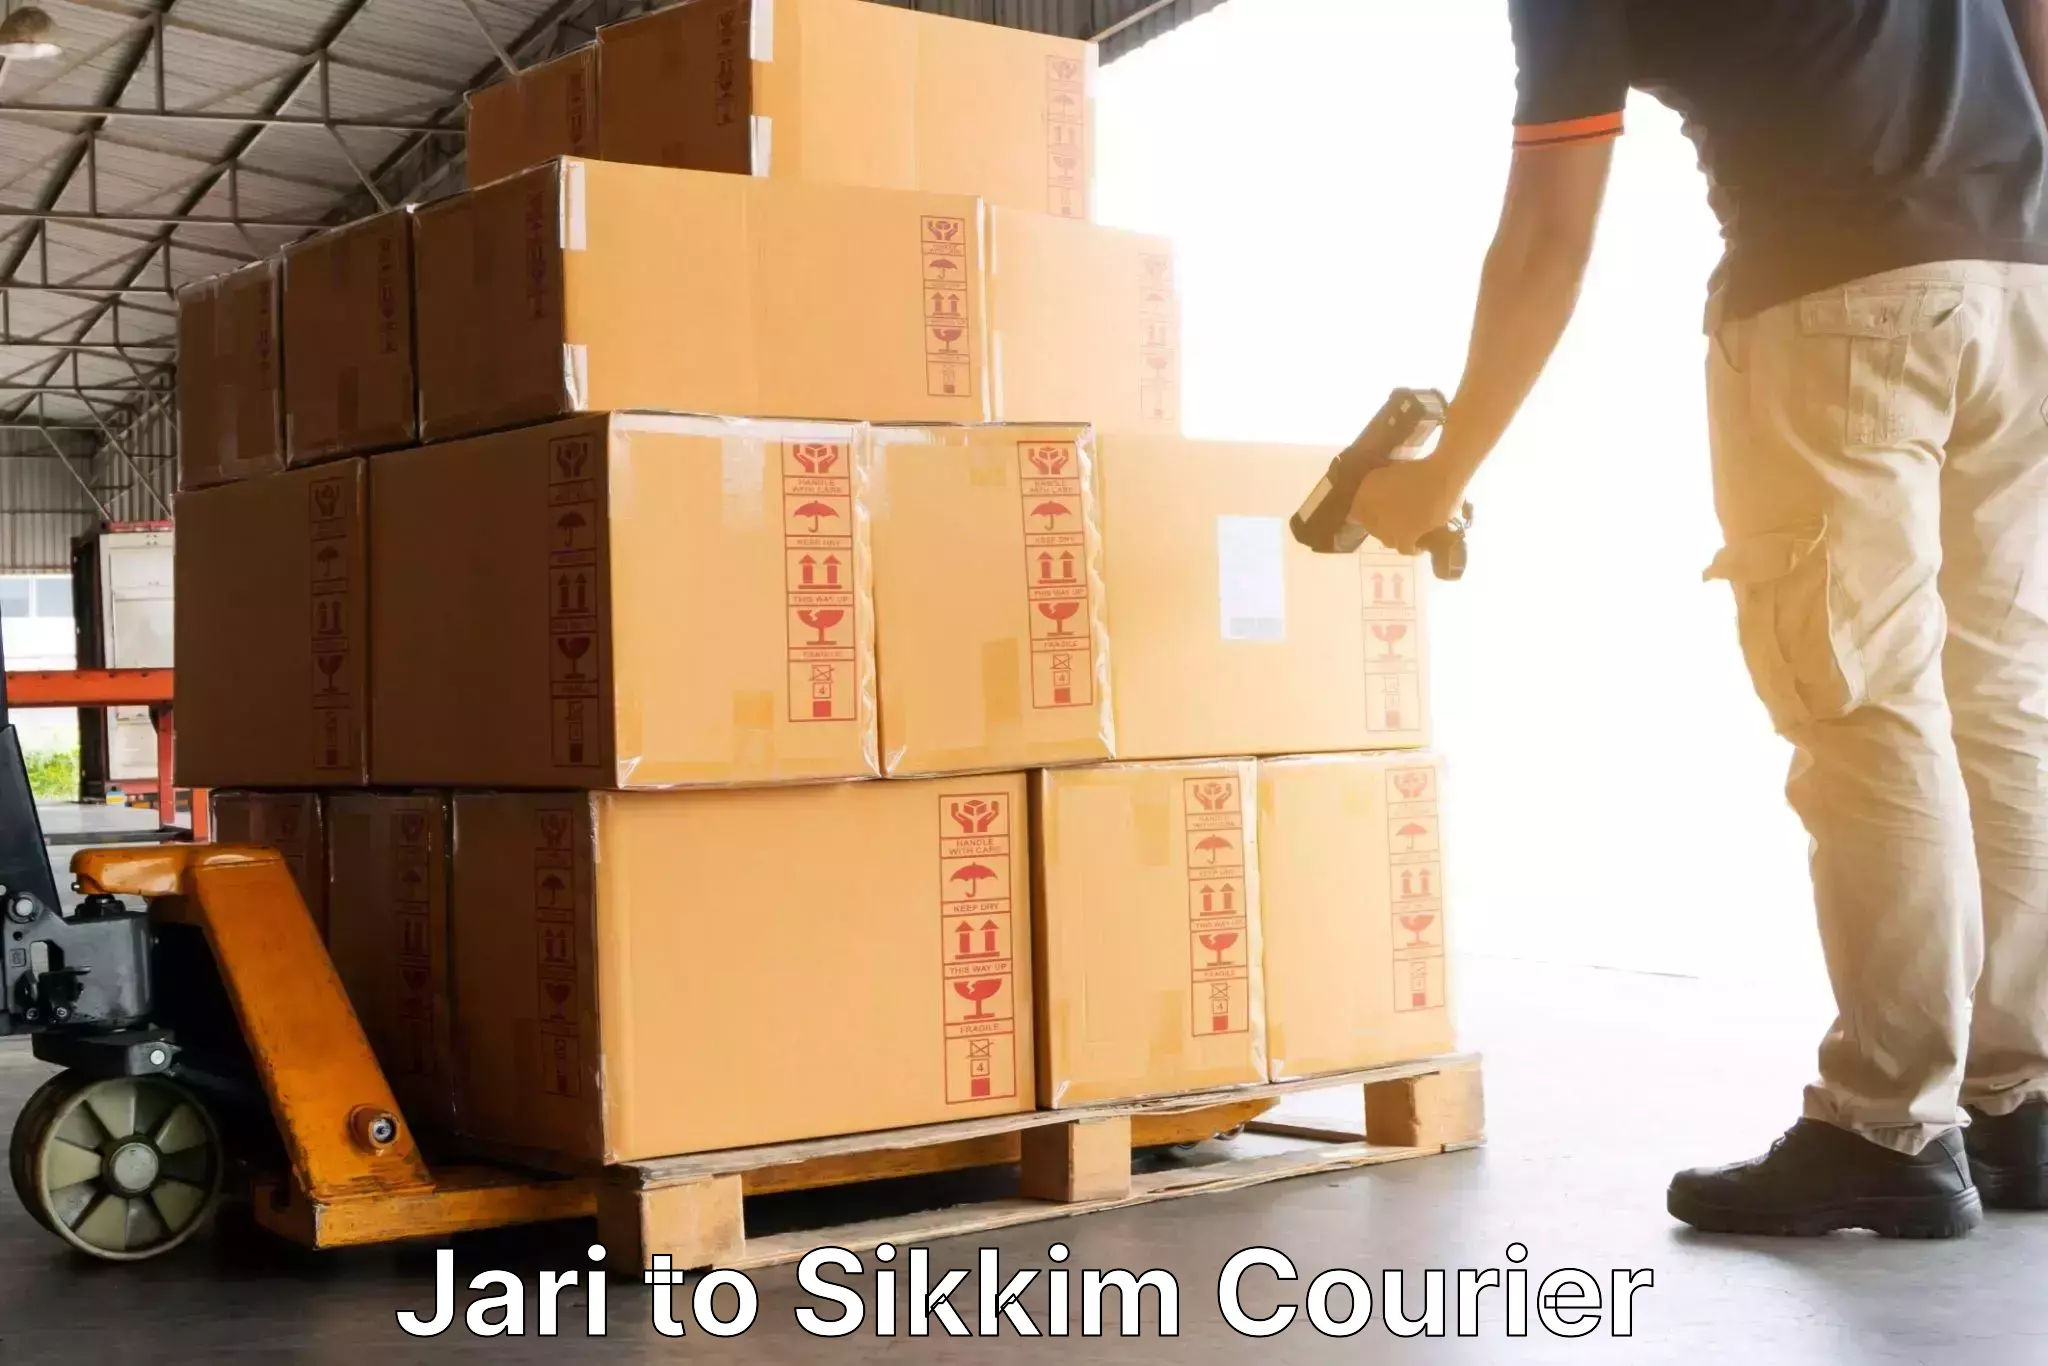 High-speed parcel service Jari to North Sikkim